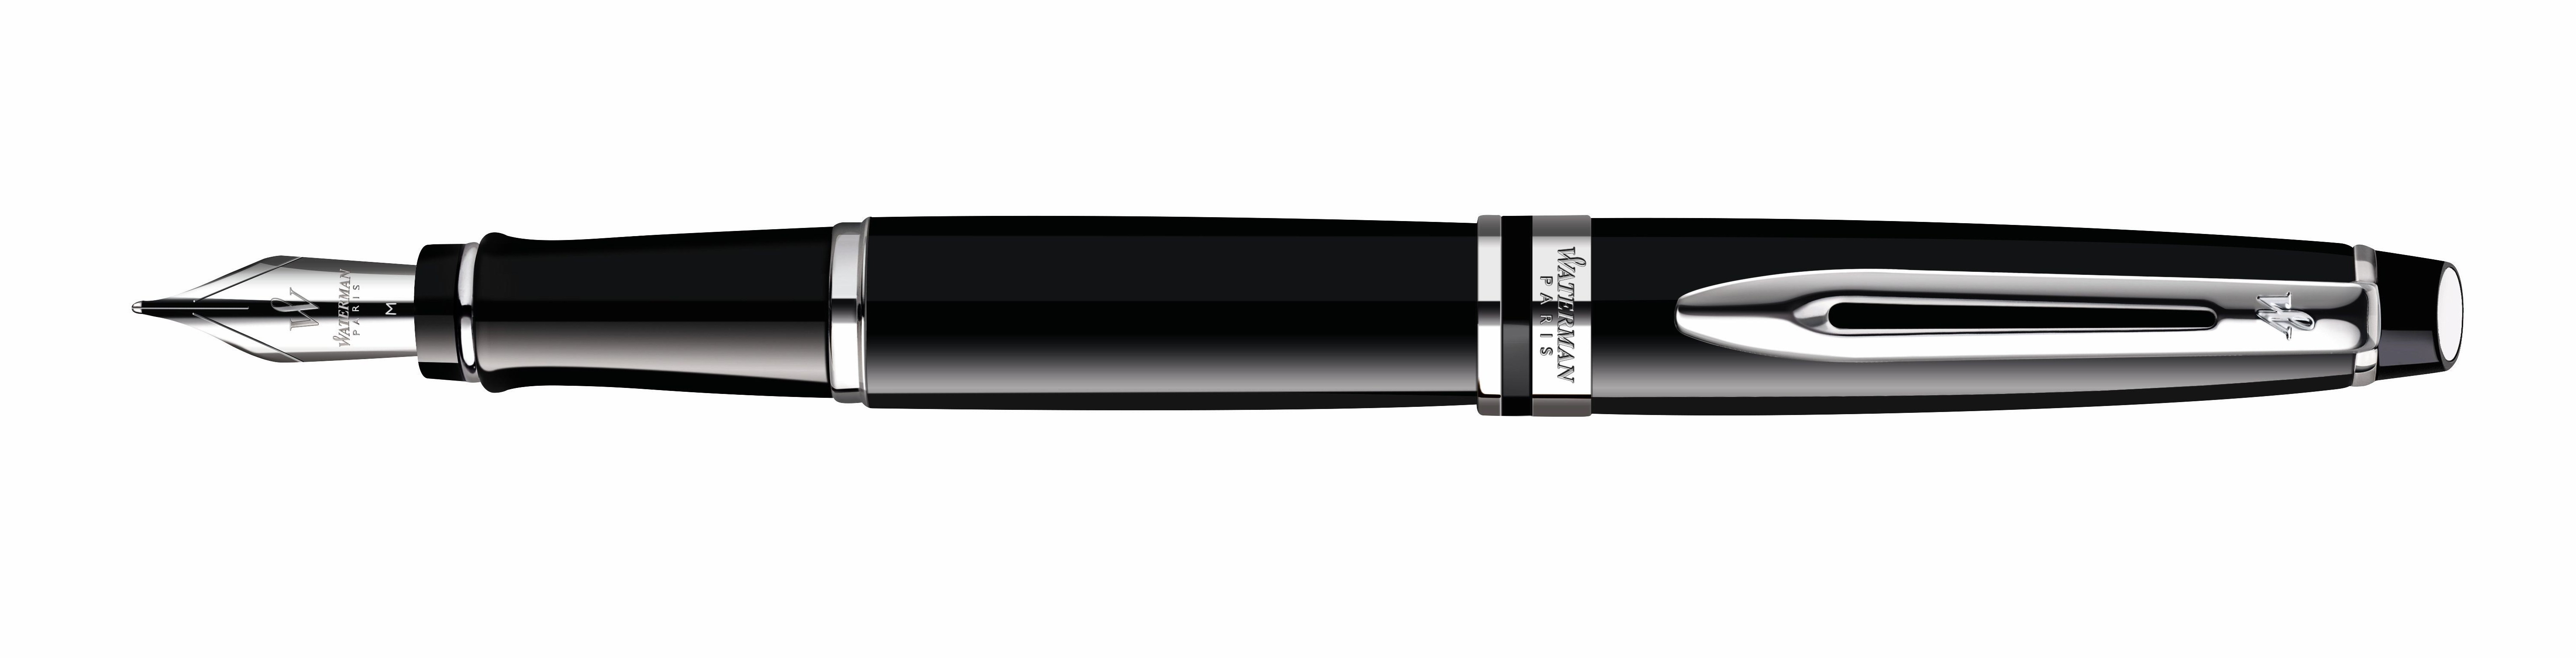 Ручка перьевая Waterman Expert 3 (S0951740) Black CT (F) чернила: синий перо нержавеющая сталь палладиевое покрытие